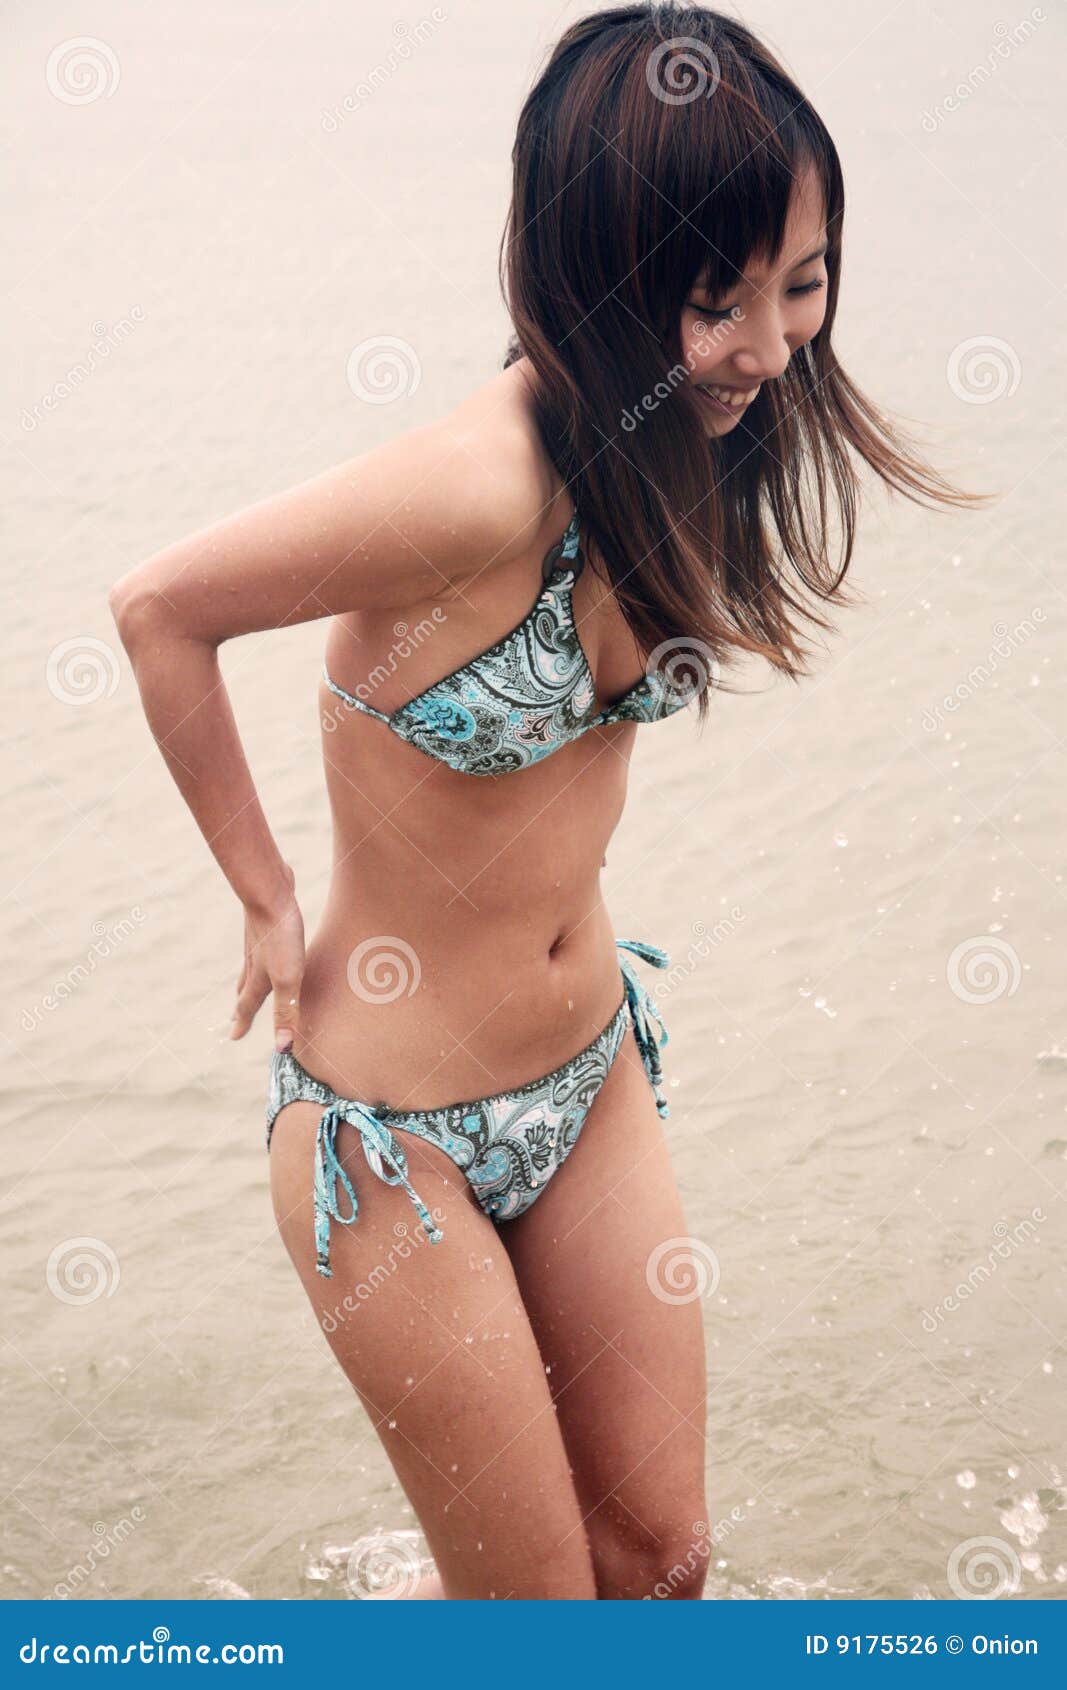 betul demir add photo asian women in bikinis